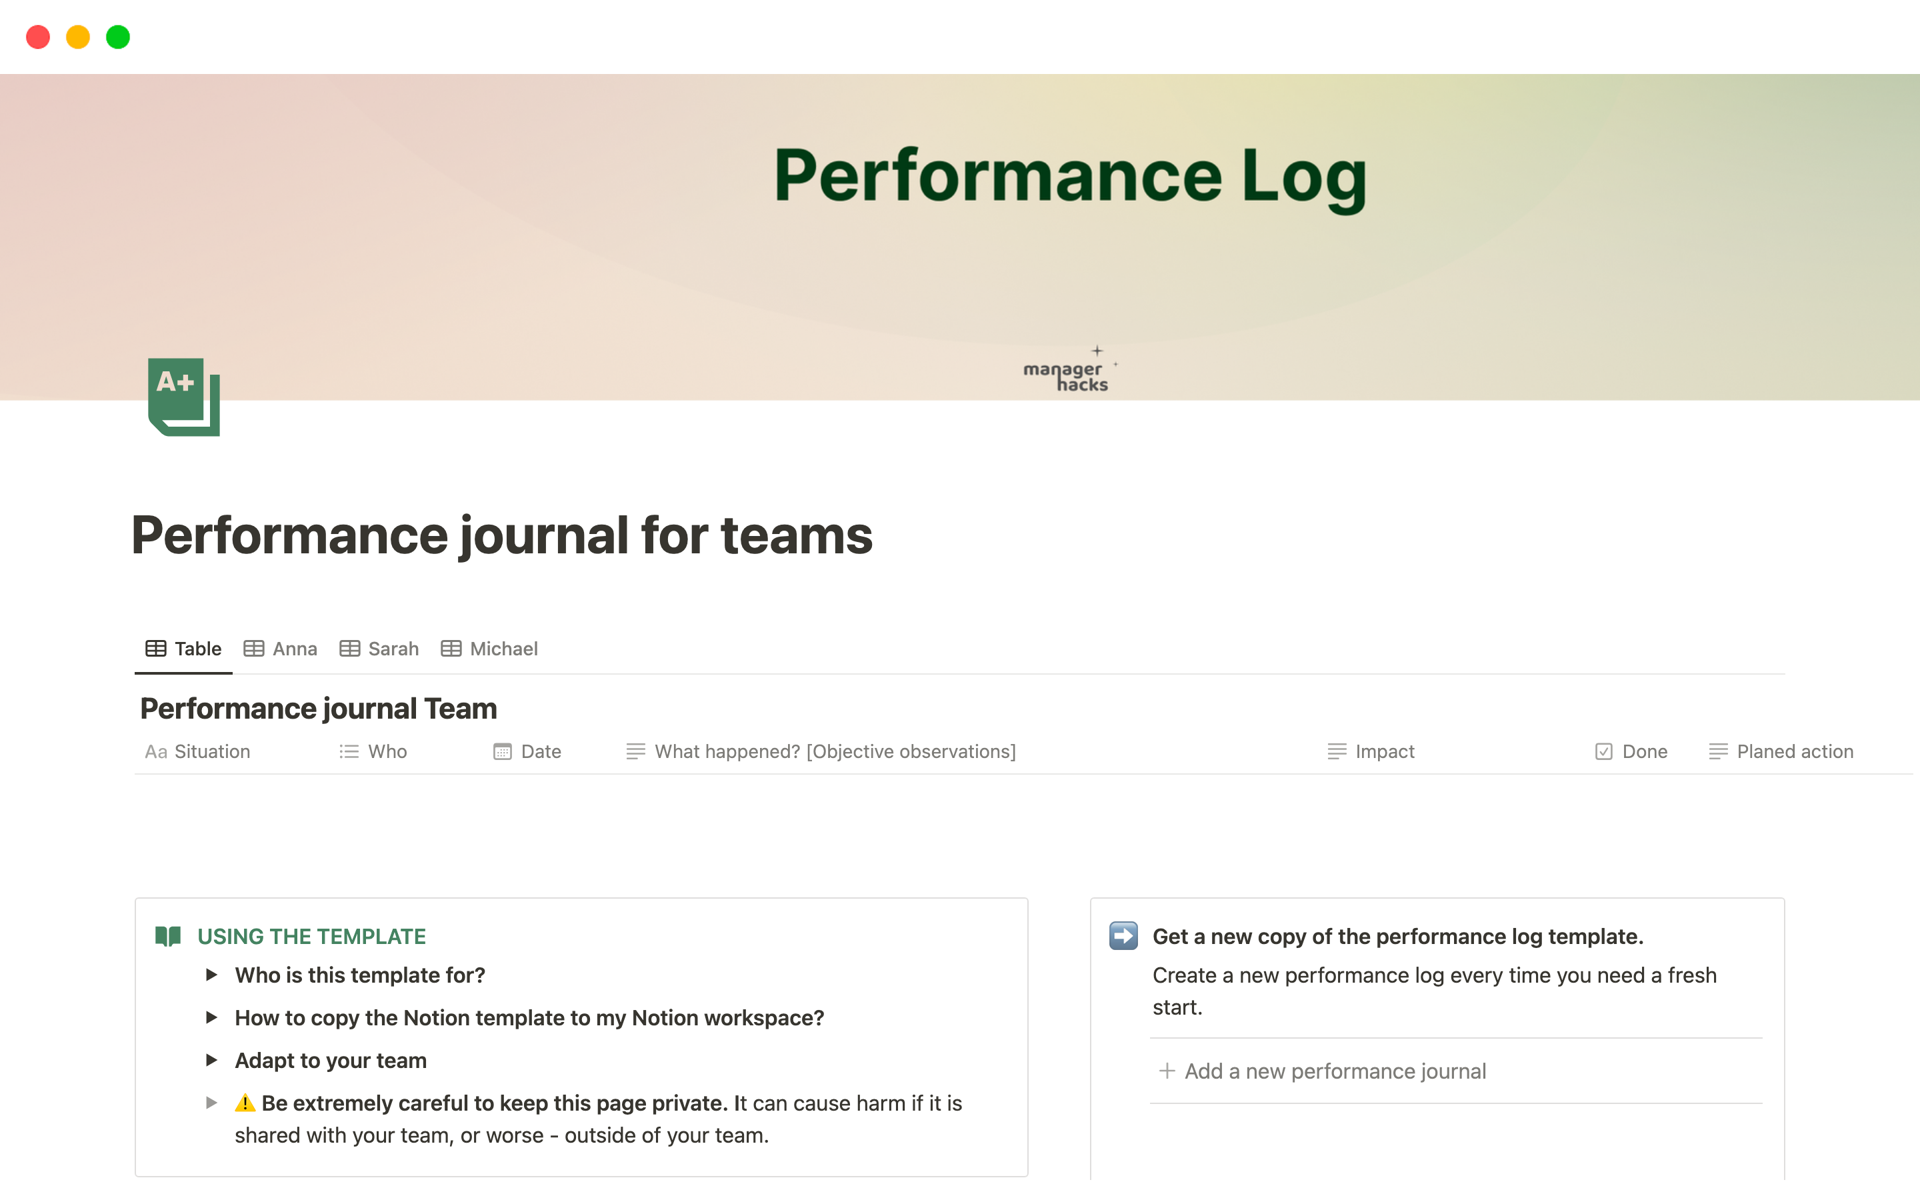 Aperçu du modèle de Performance journal for teams